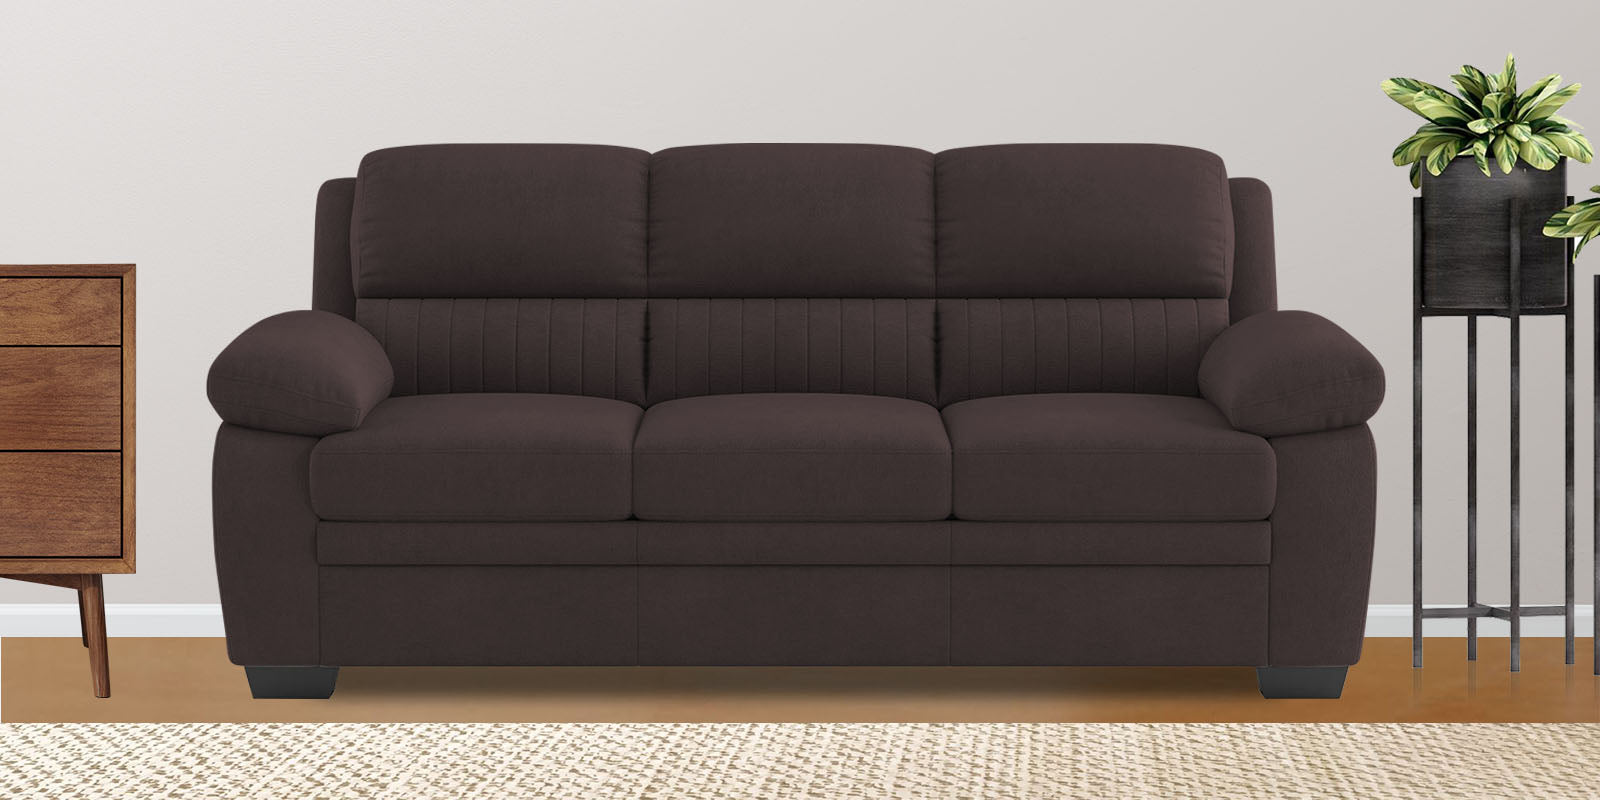 Miranda Velvet 3 Seater Sofa in Mocha Brown Colour